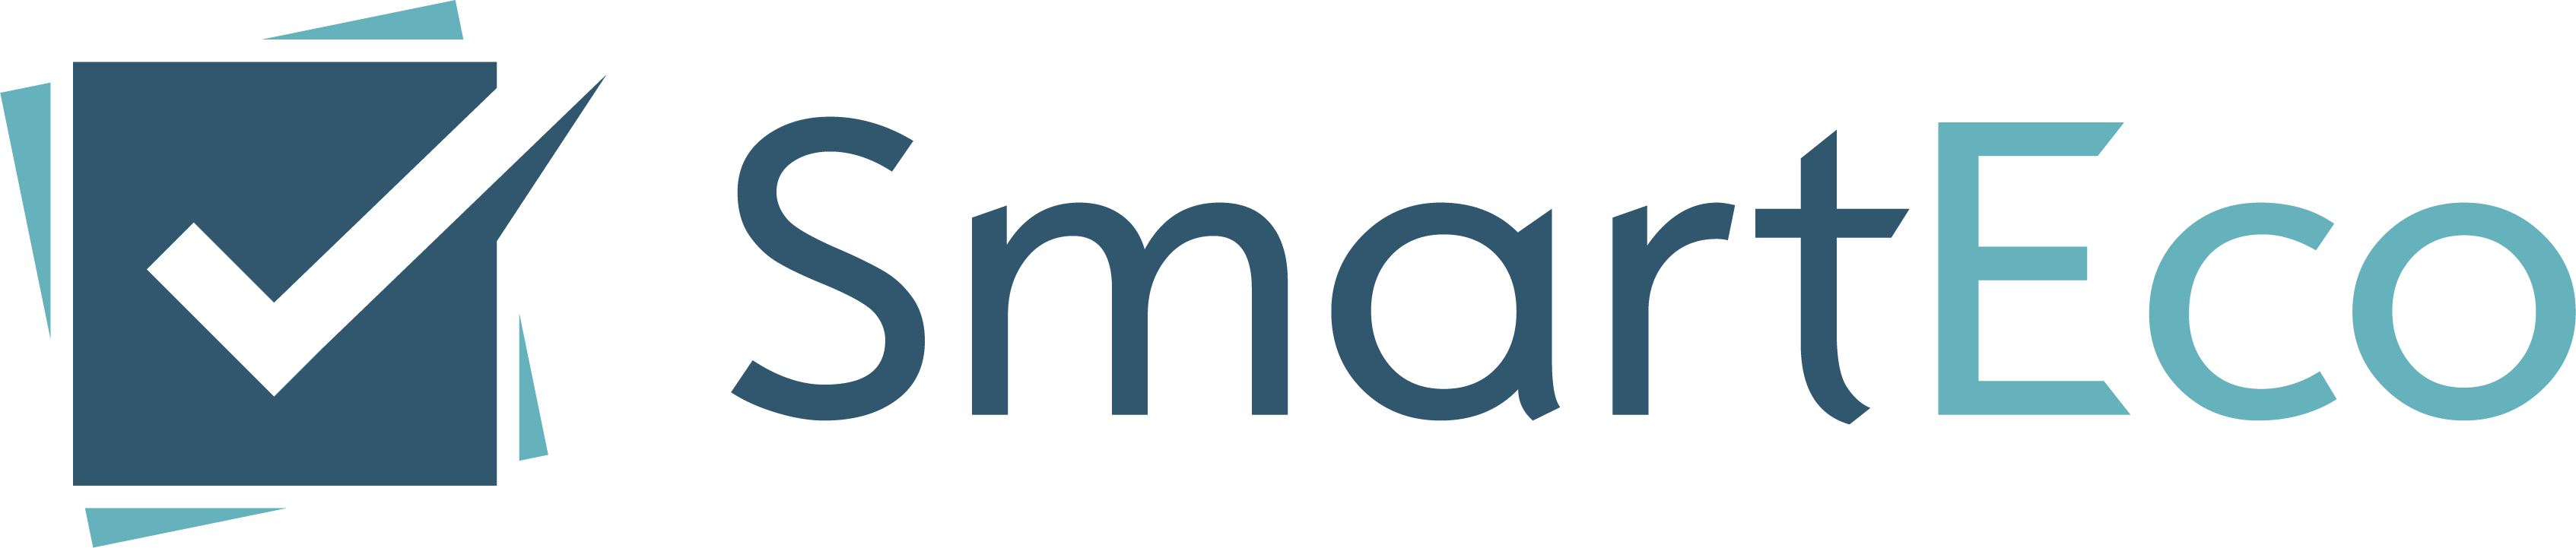 Smarteco logo